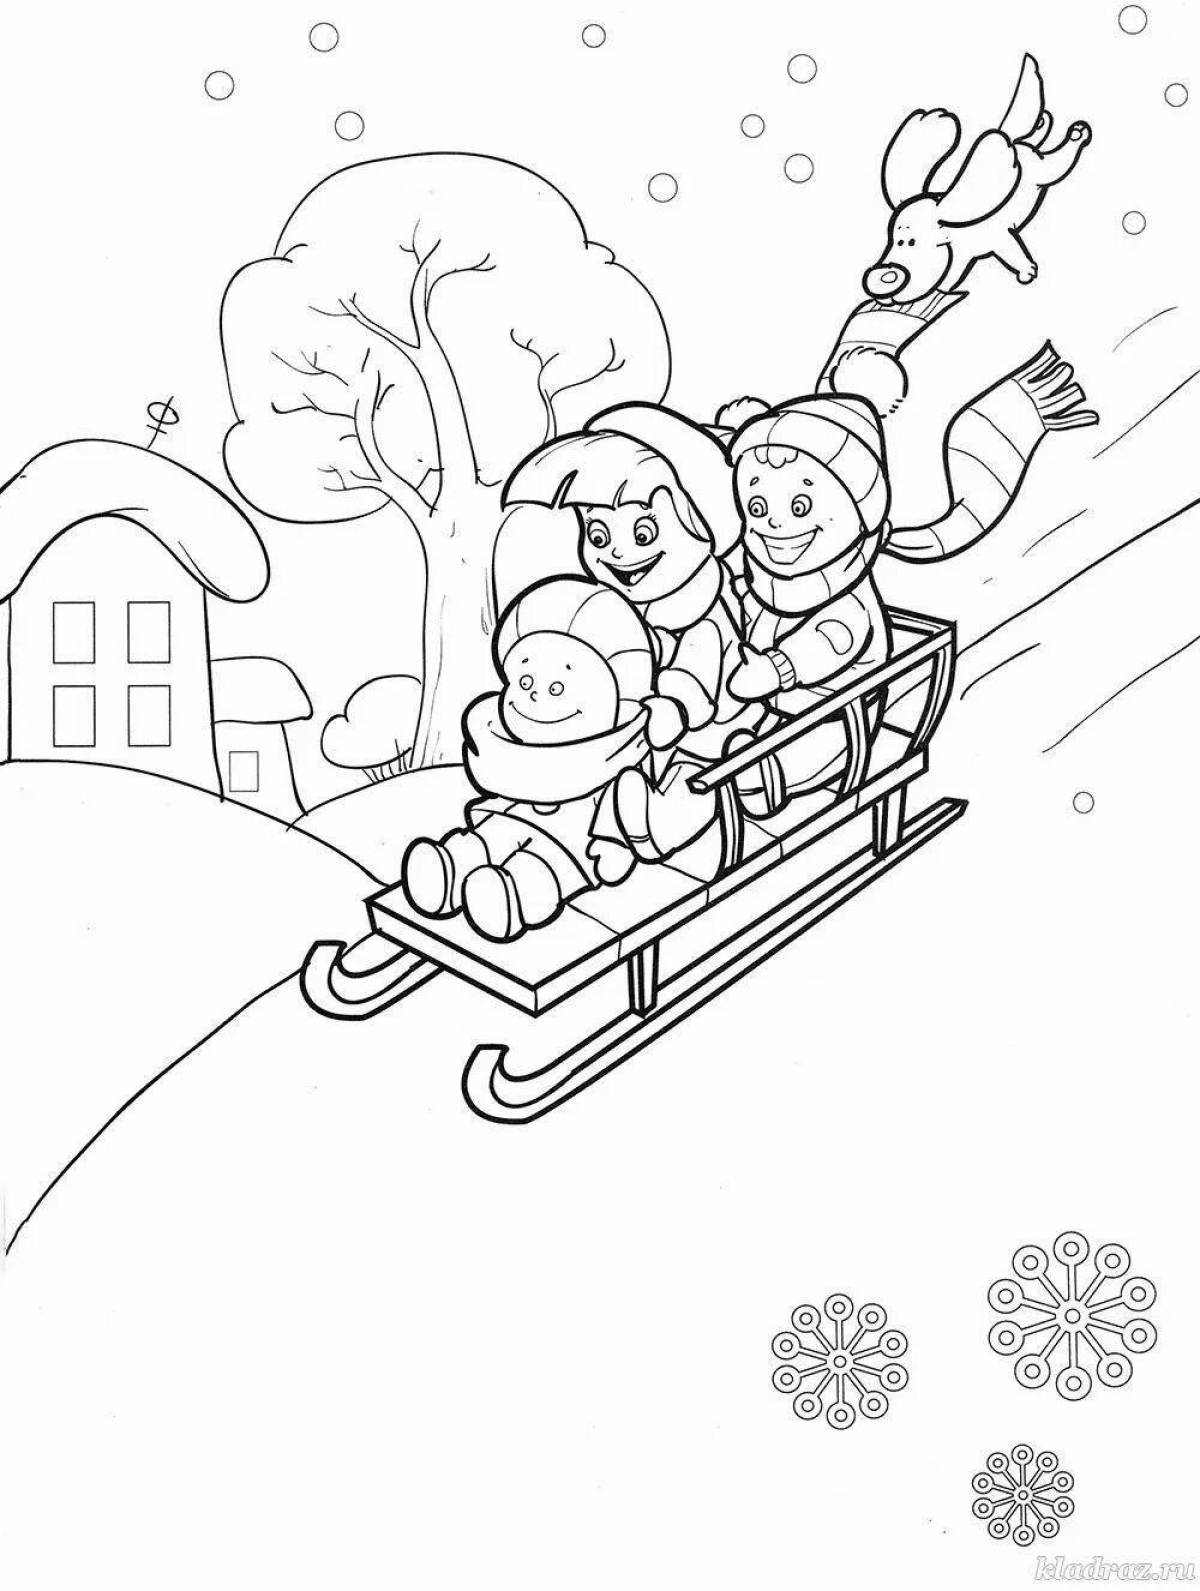 Snow teams coloring page